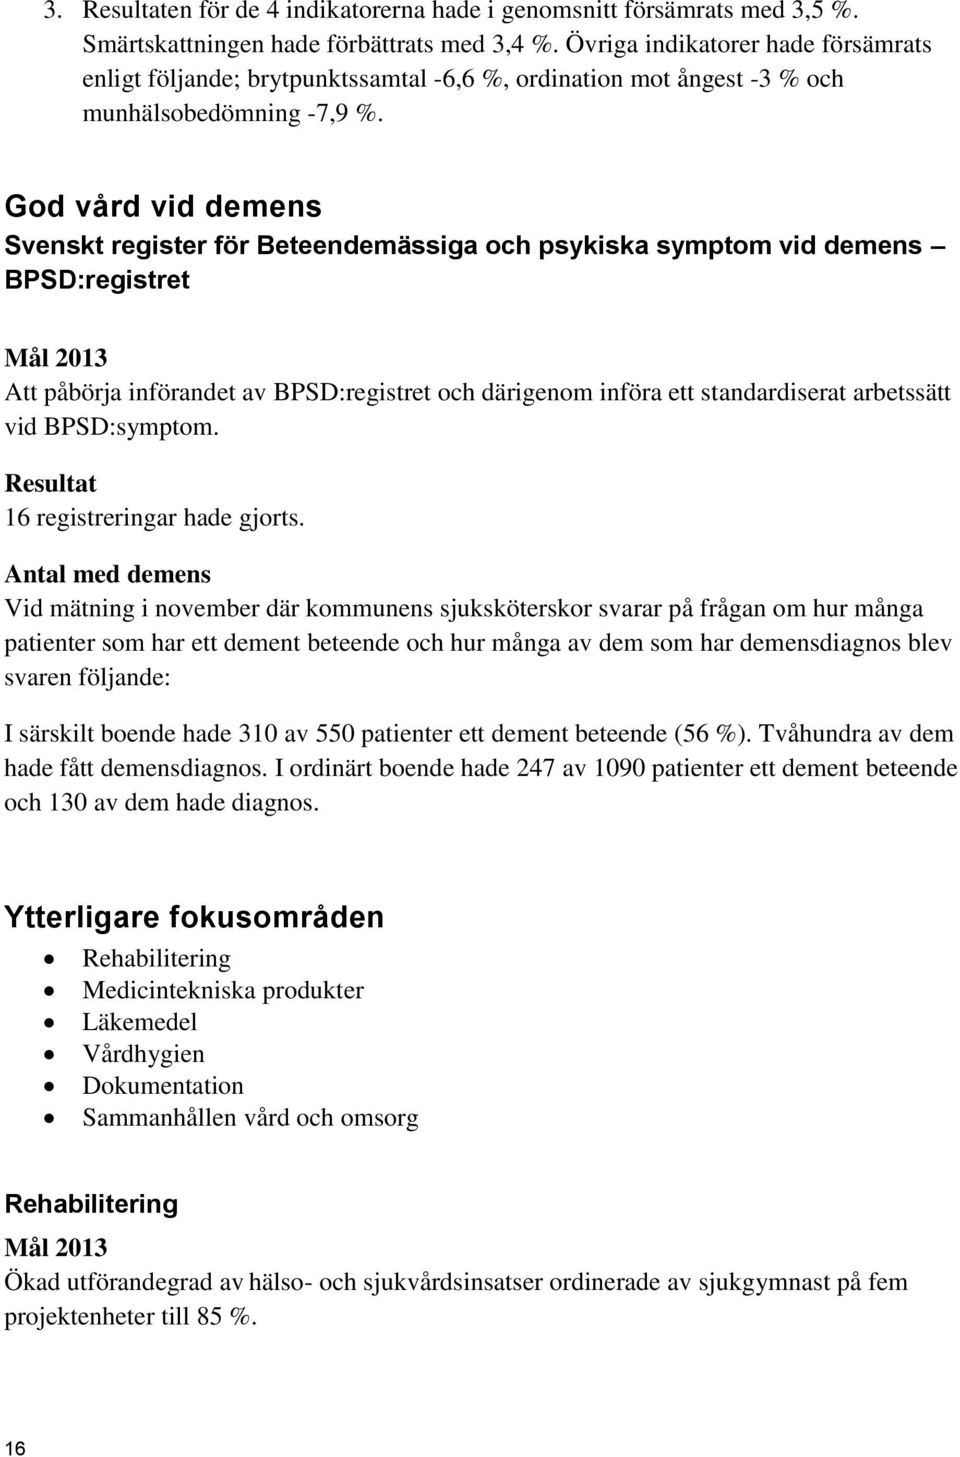 God vård vid demens Svenskt register för Beteendemässiga och psykiska symptom vid demens BPSD:registret Mål 2013 Att påbörja införandet av BPSD:registret och därigenom införa ett standardiserat